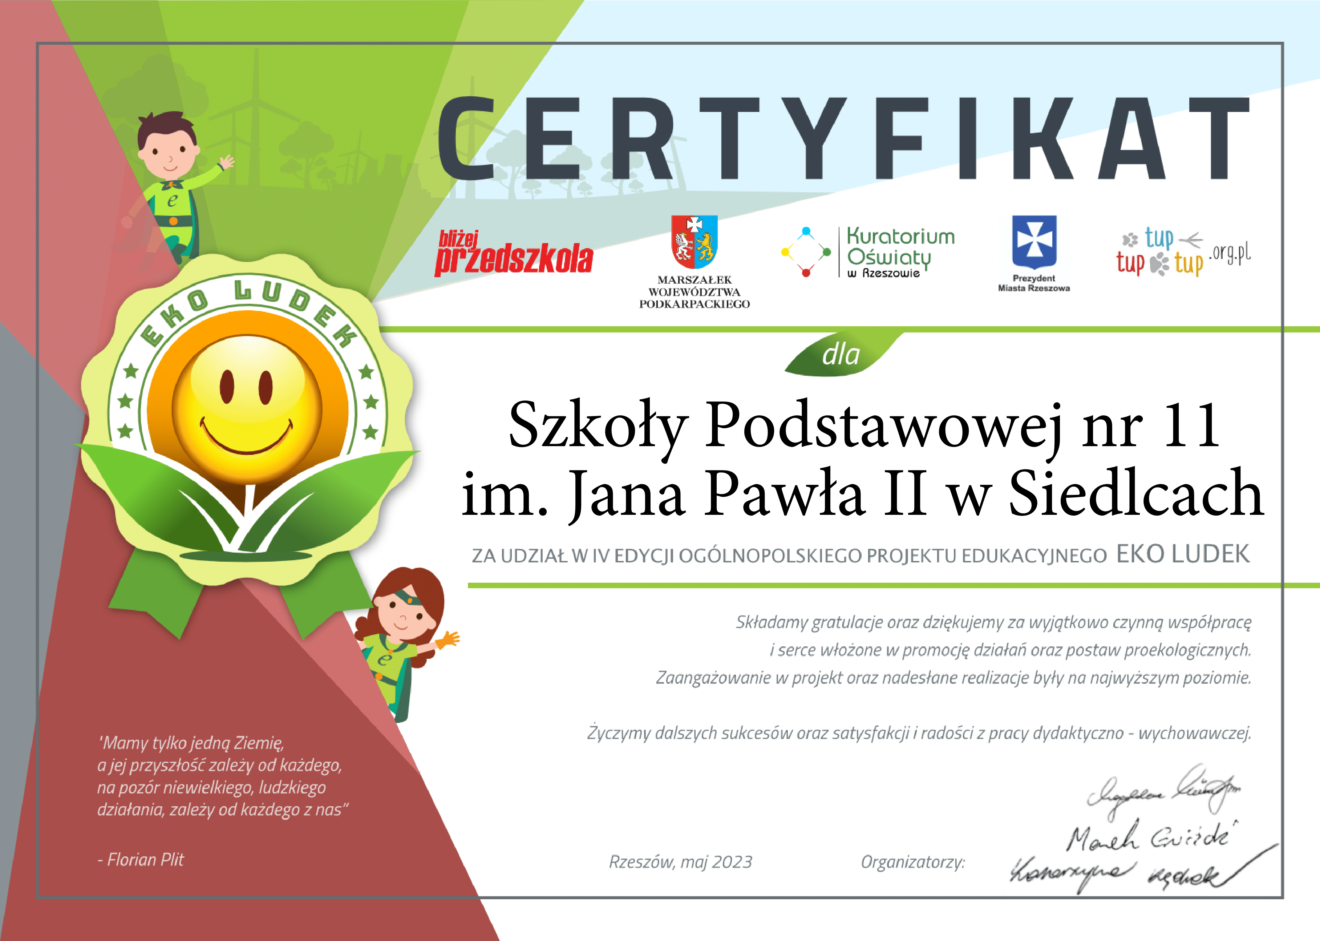 Certyfikat udziału w Ogólnopolskim Projekcie Edukacyjnym Eko Ludek